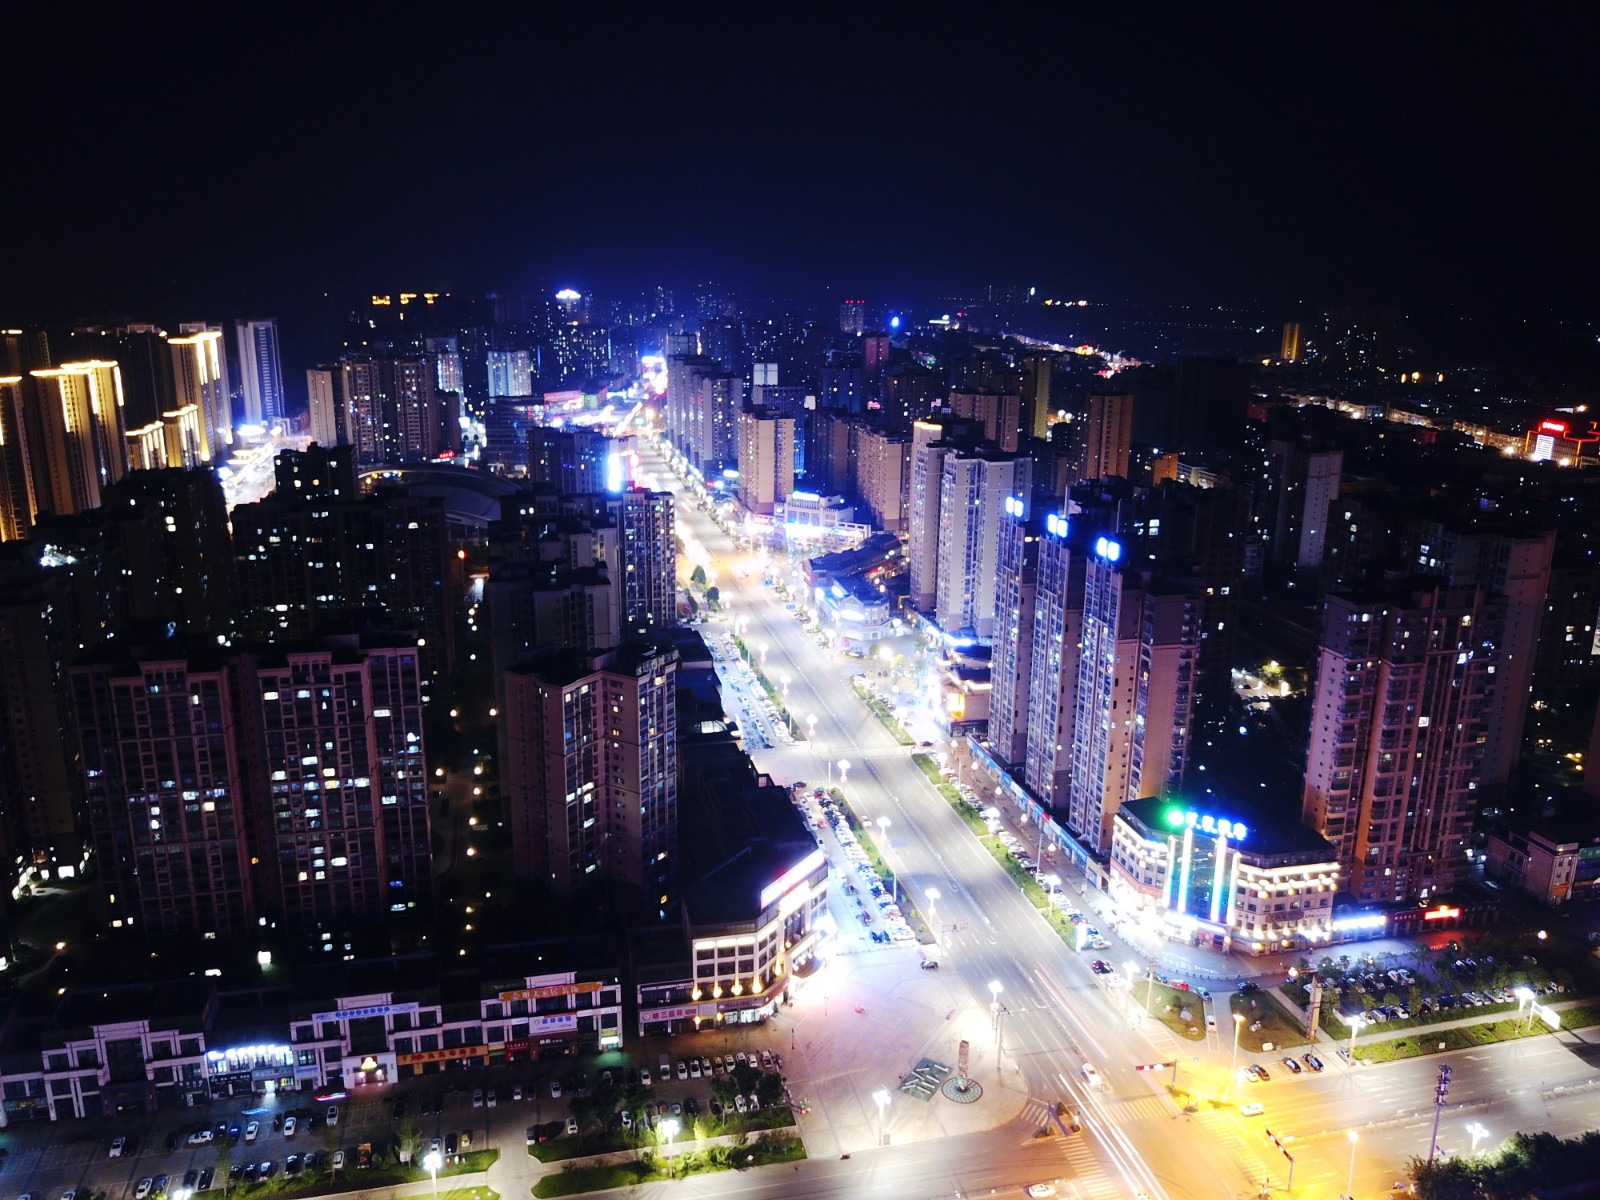 富顺夜景规划照明设计 - 城市照明规划设计 - 金鑫照明集团